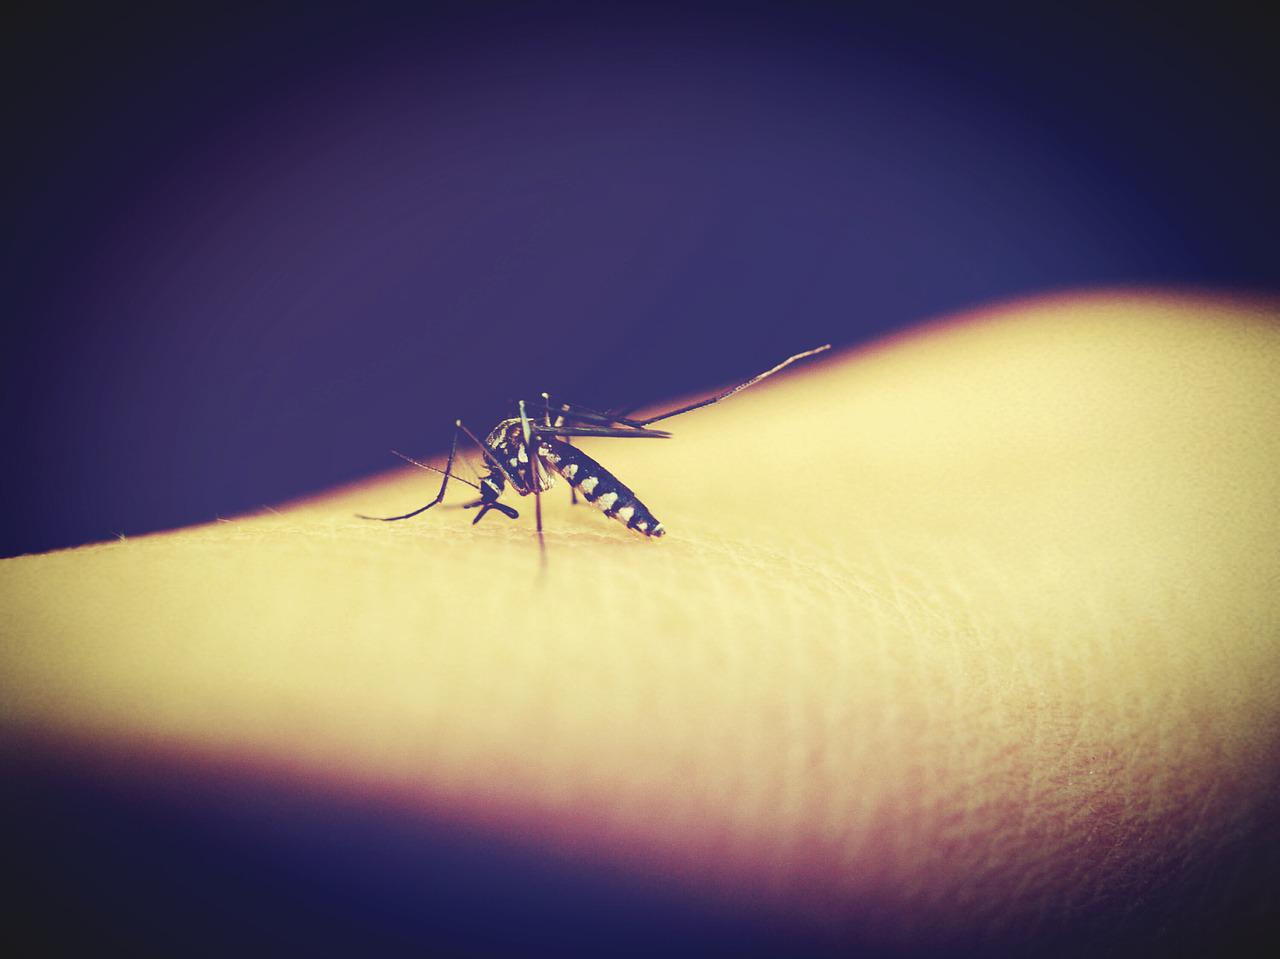 10 užitočných rád, ako sa chrániť pred uštipnutím hmyzom